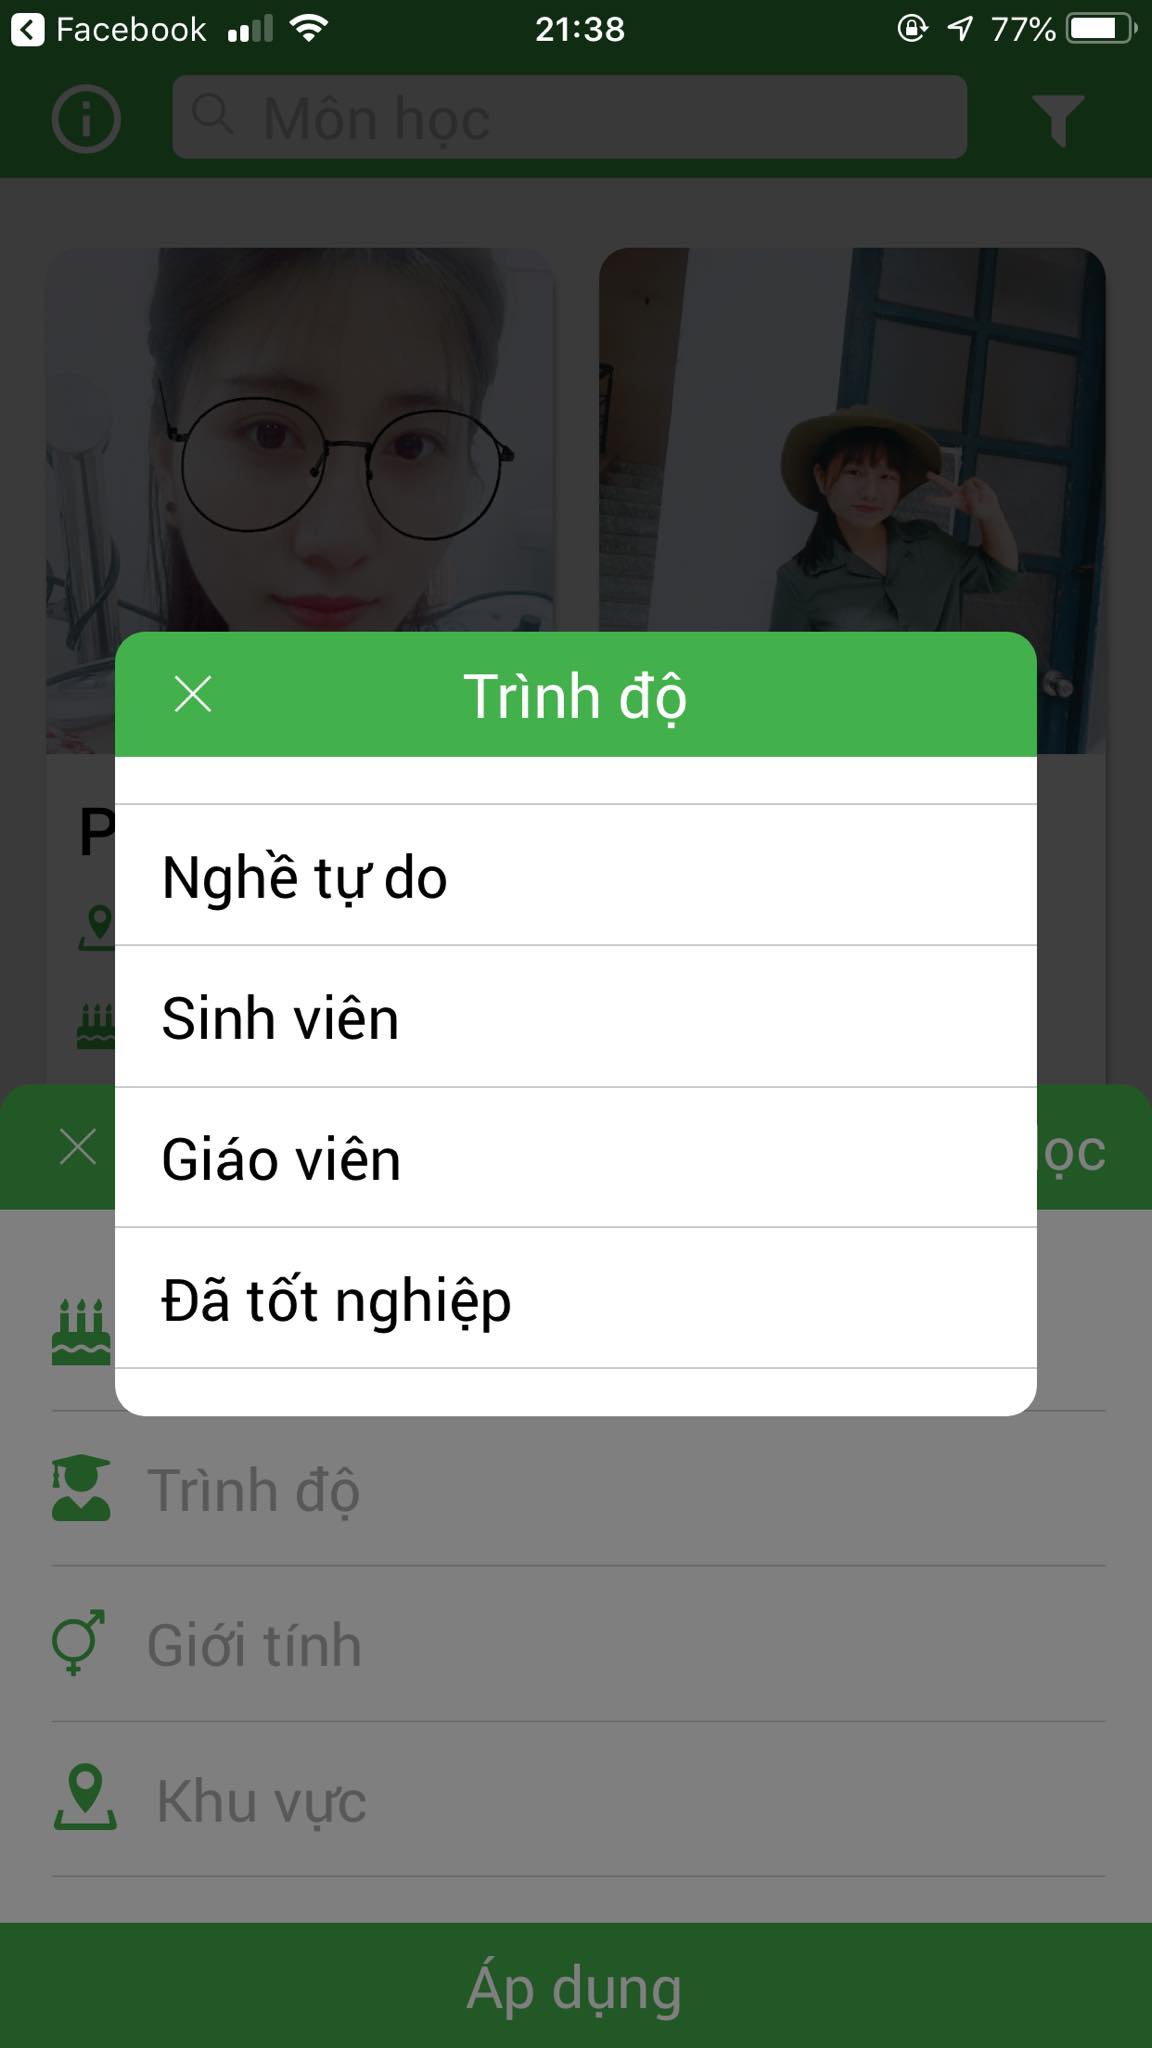 App Daykemtainha.vn Toán Lý Hóa